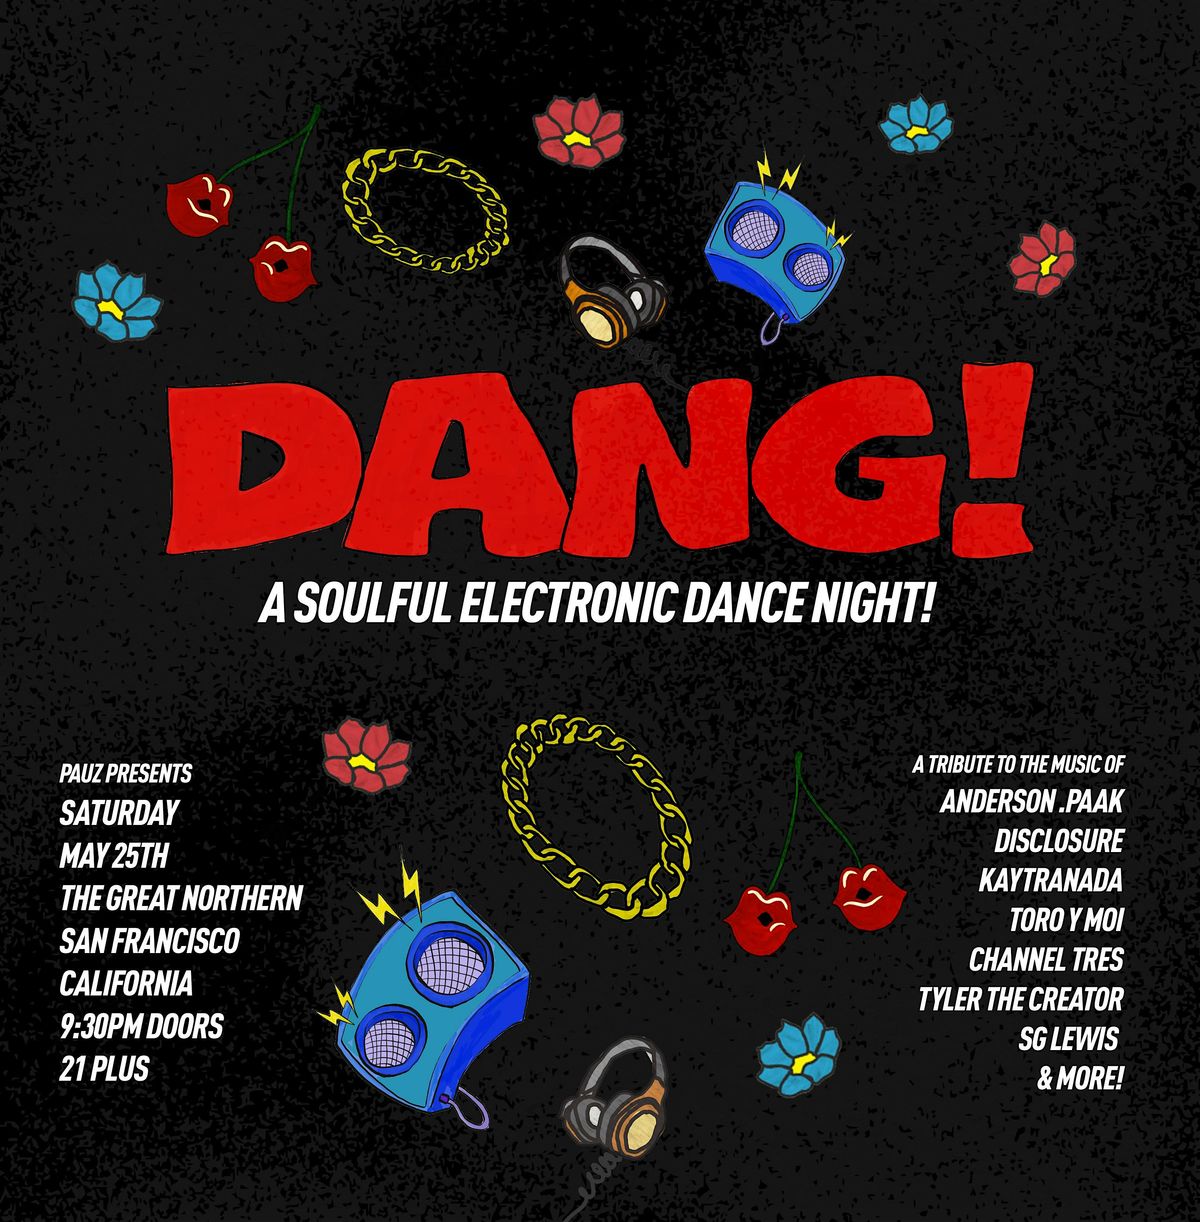 DANG! A Soulful Electronic Dance Night